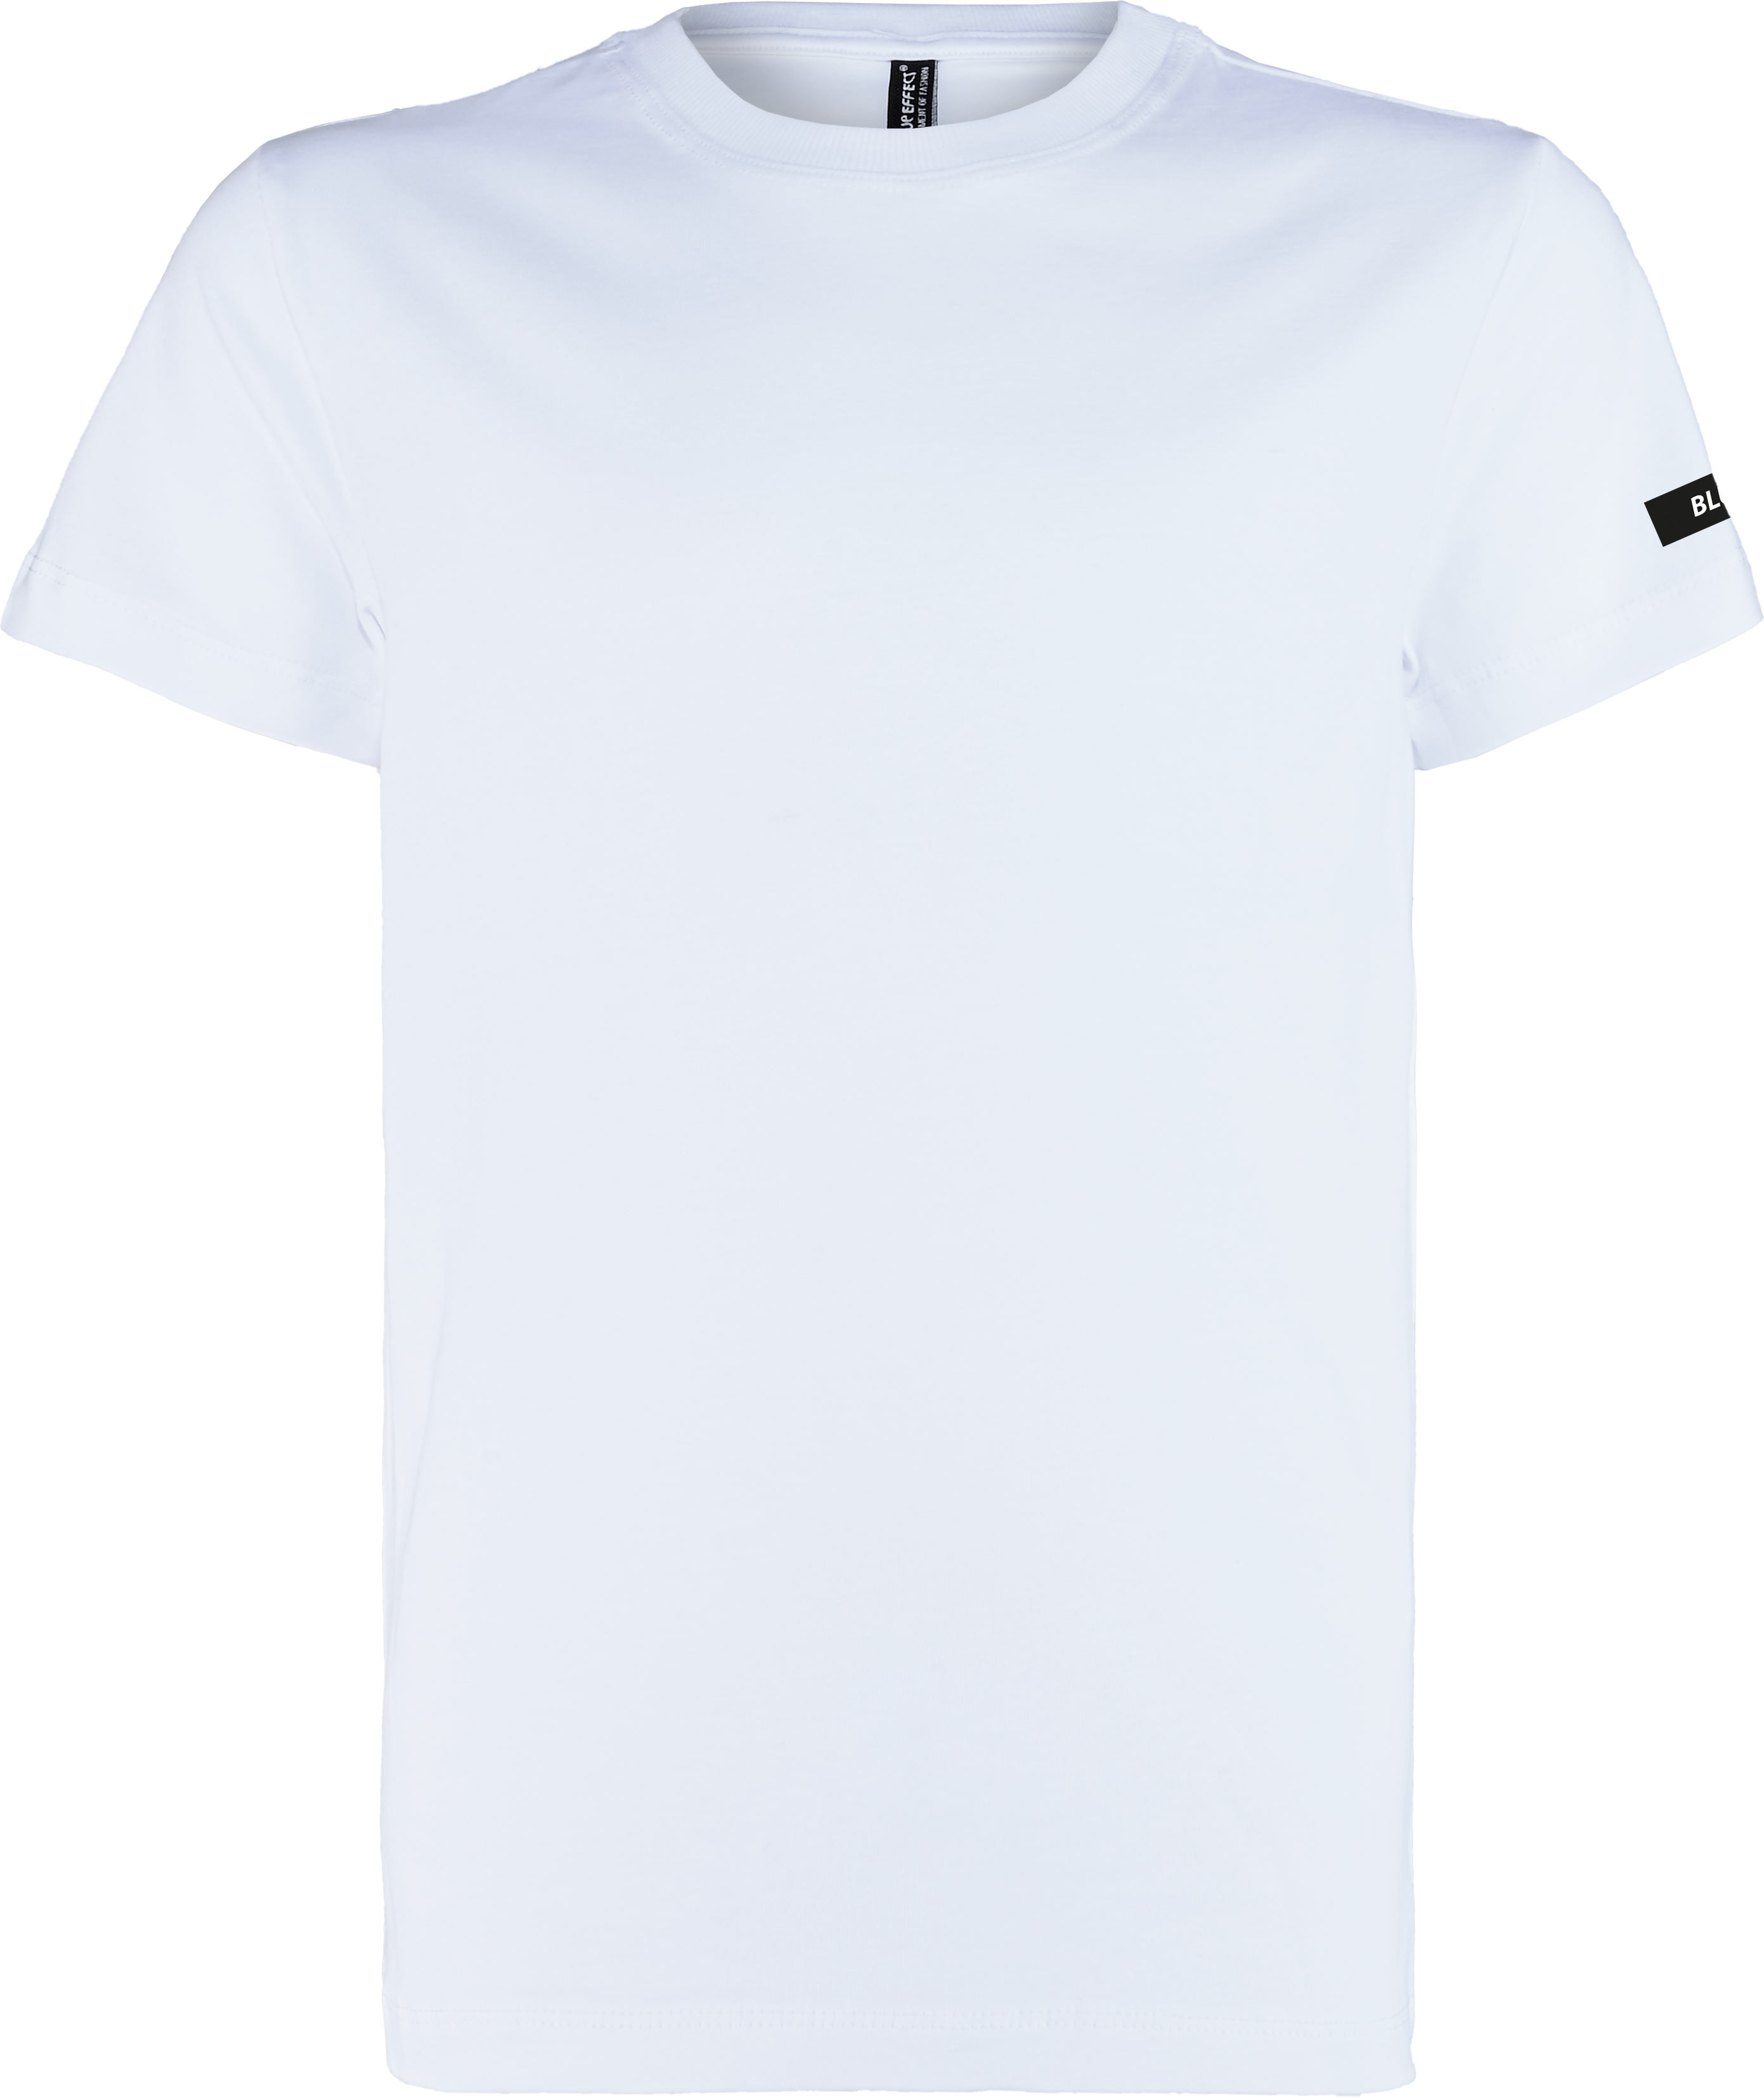 6320-Boys T-Shirt